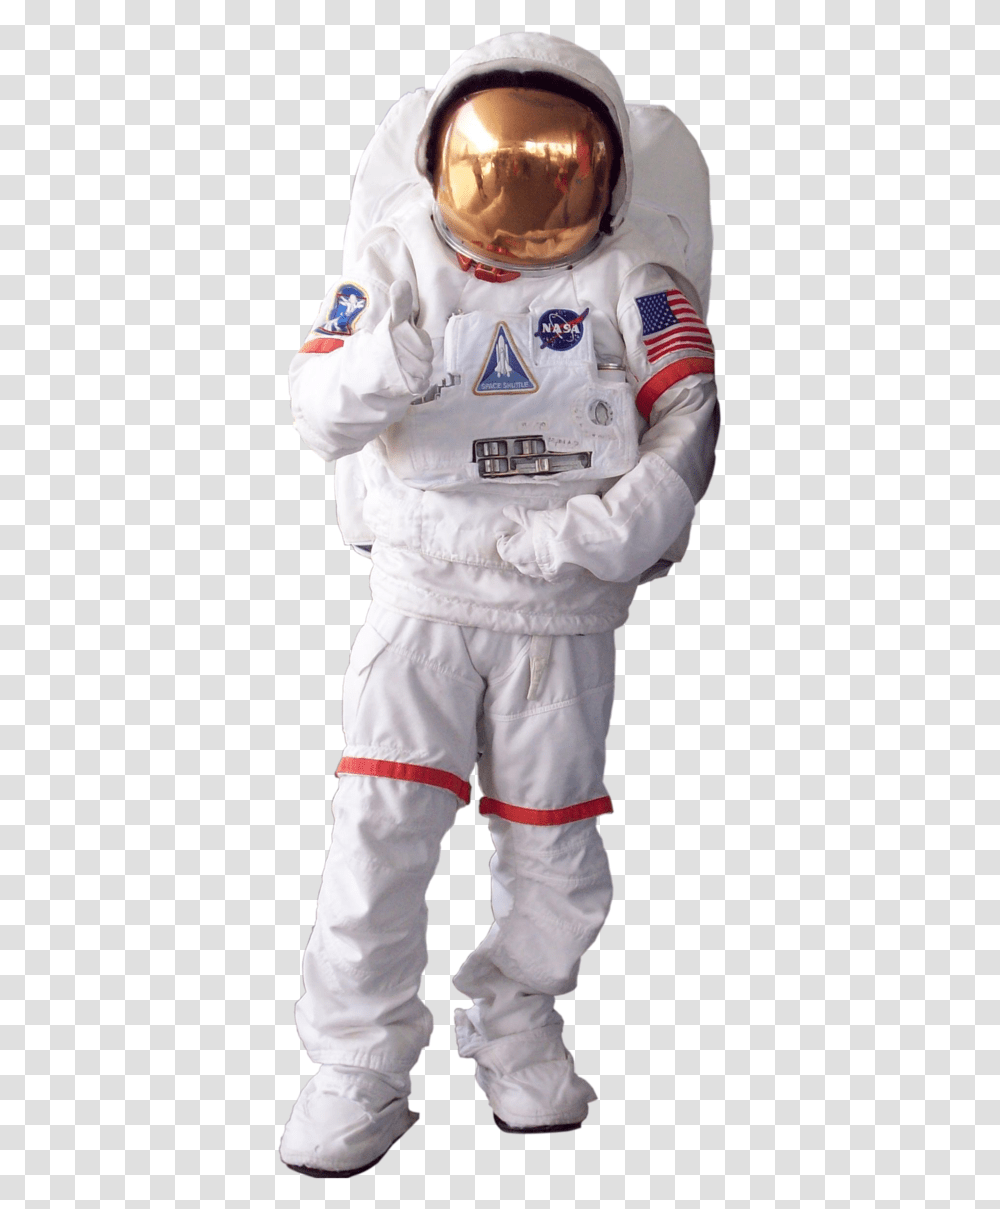 Flag Clipart Astronaut Clipart Background Astronaut, Person, Human, Helmet Transparent Png